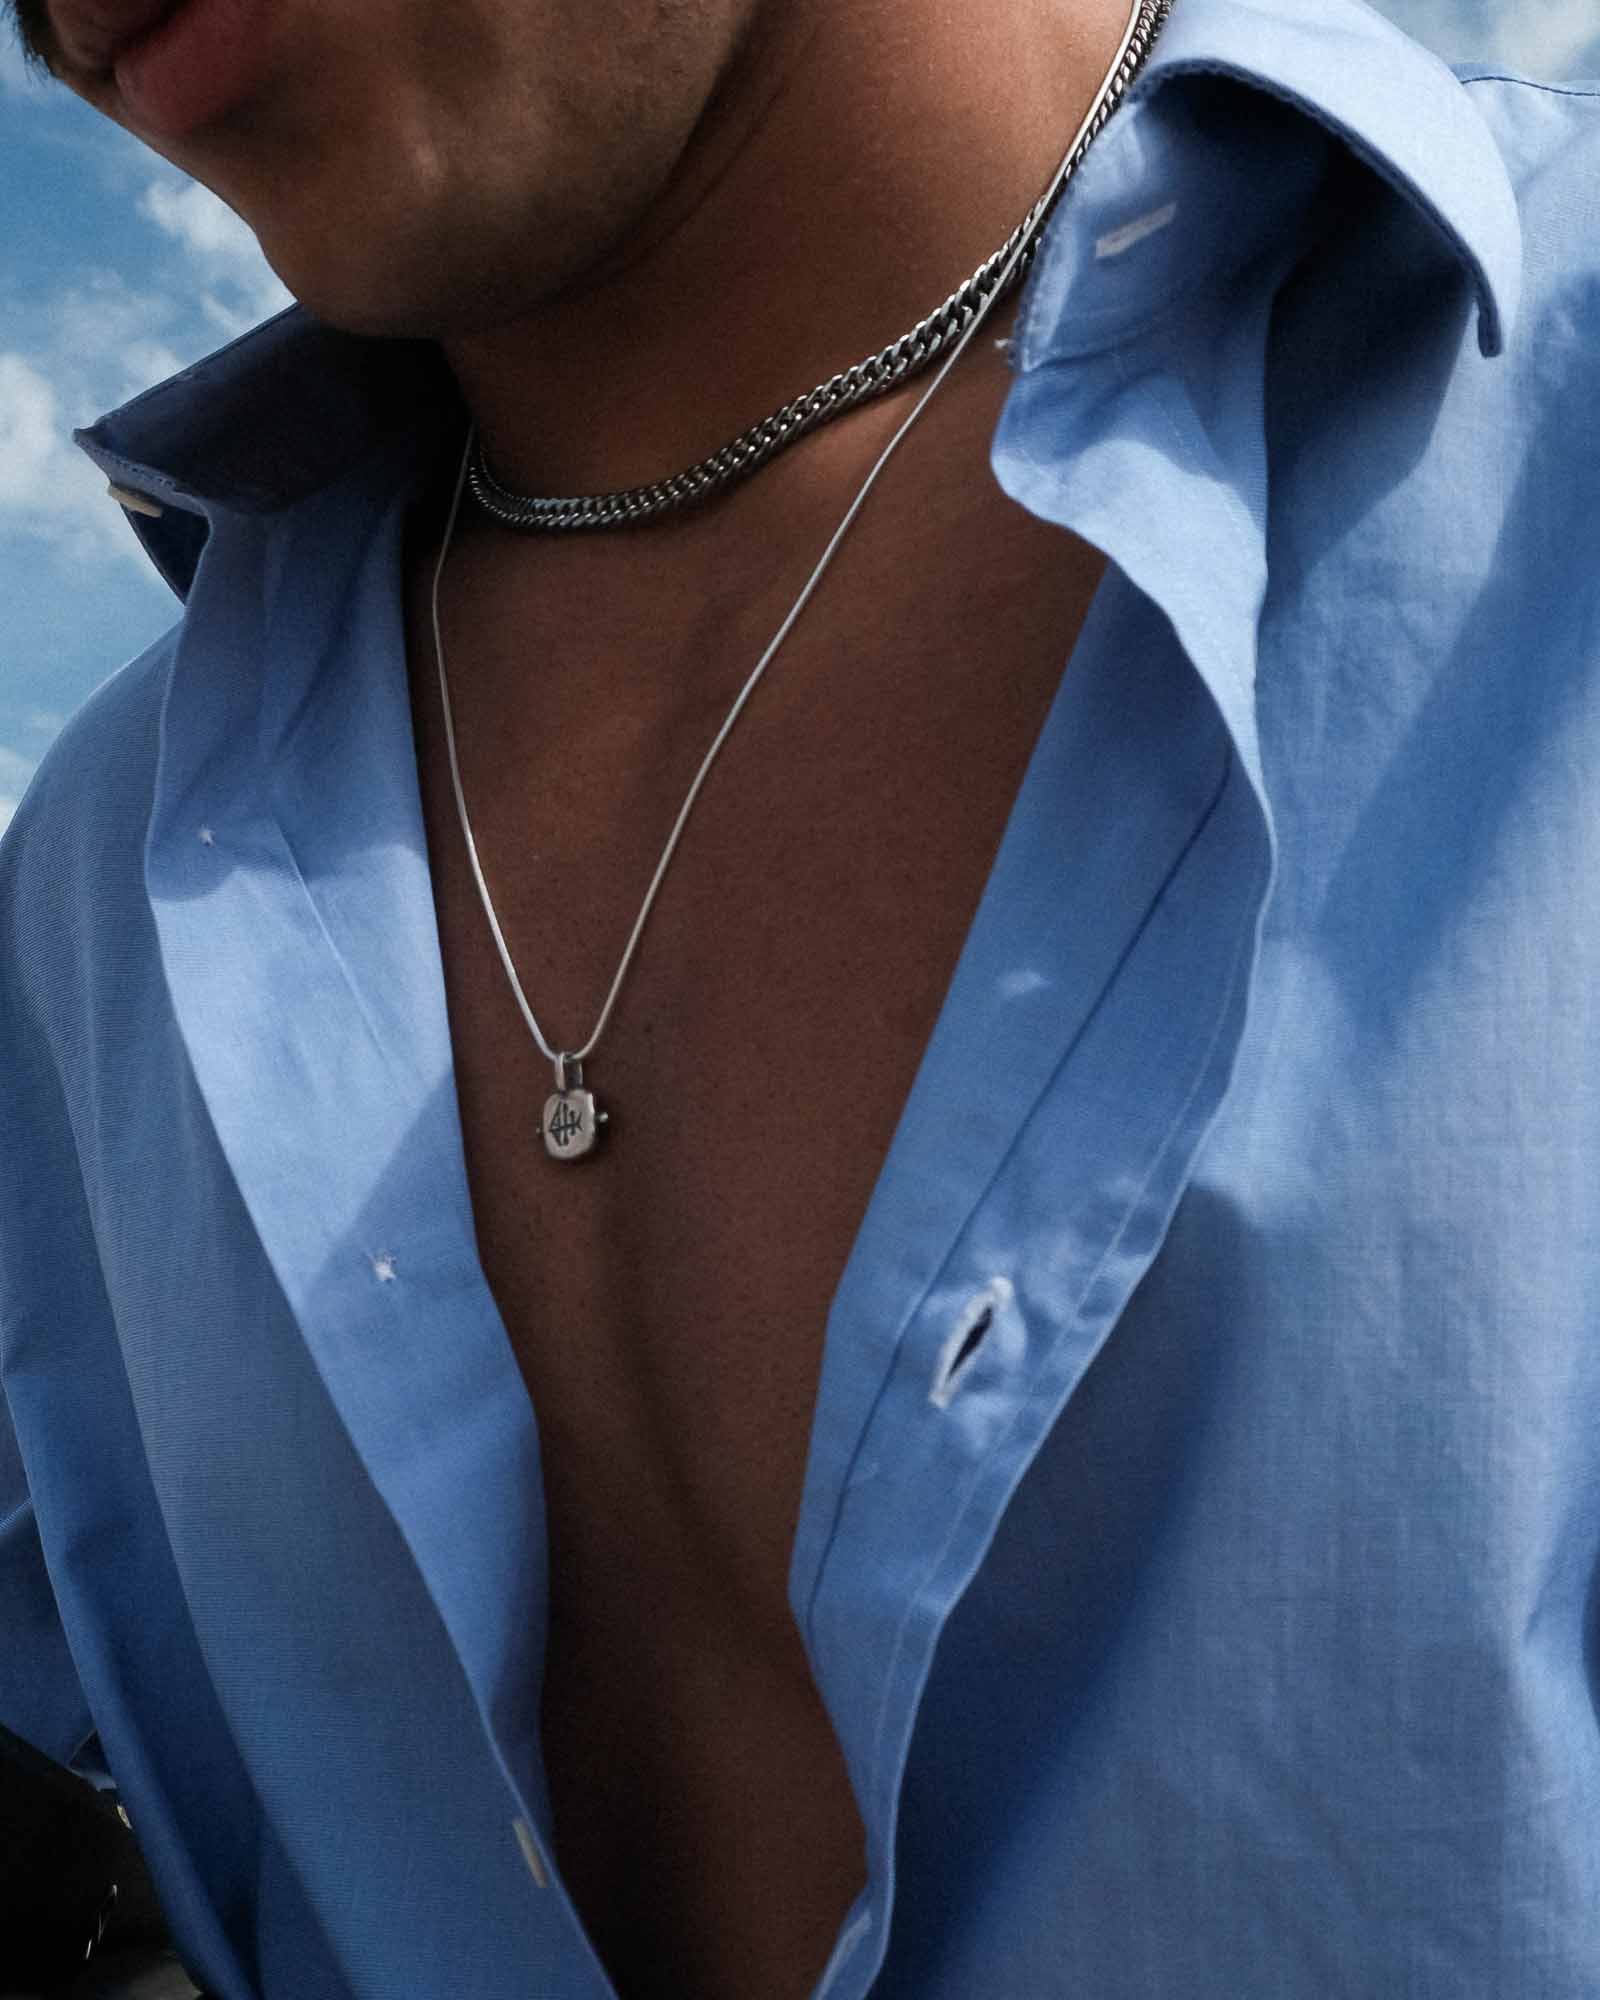 Silver Rabo de Peixe necklace on the model's neck